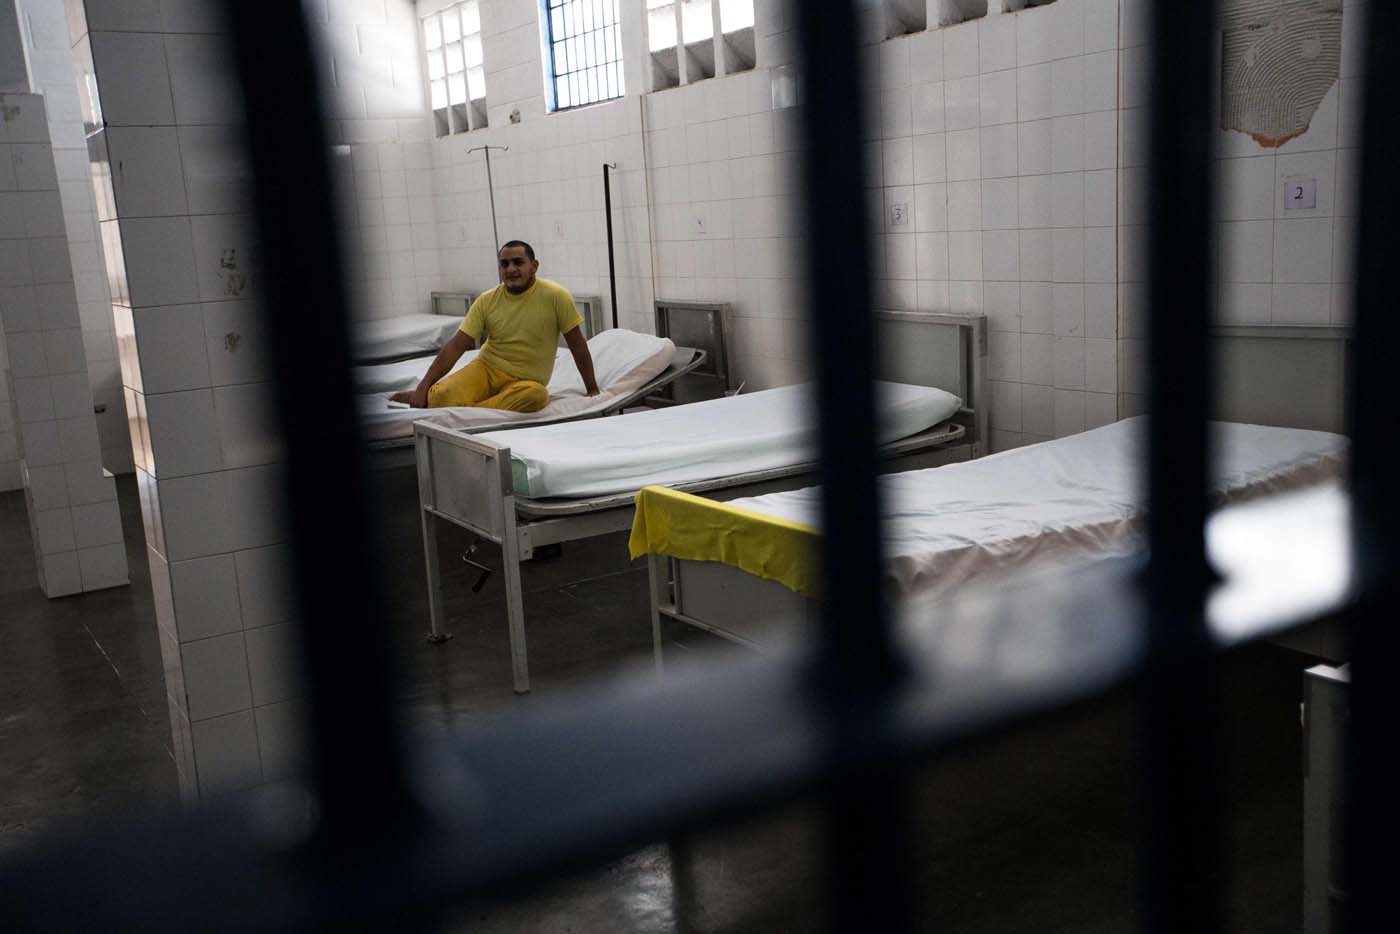 Reestablecen parcialmente las visitas en las cárceles suspendidas desde marzo